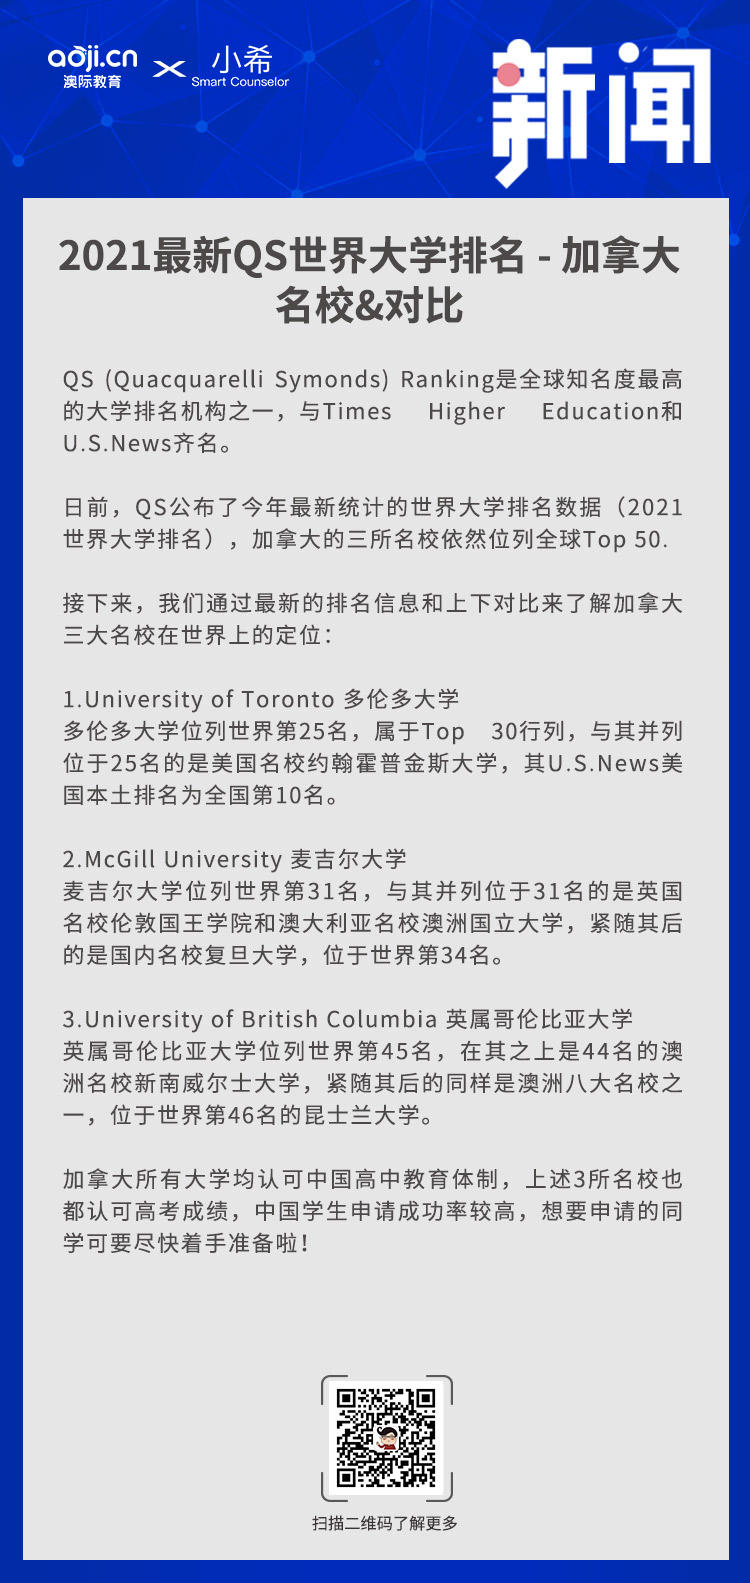 2021最新QS世界大学排名 - 加拿大名校&对比